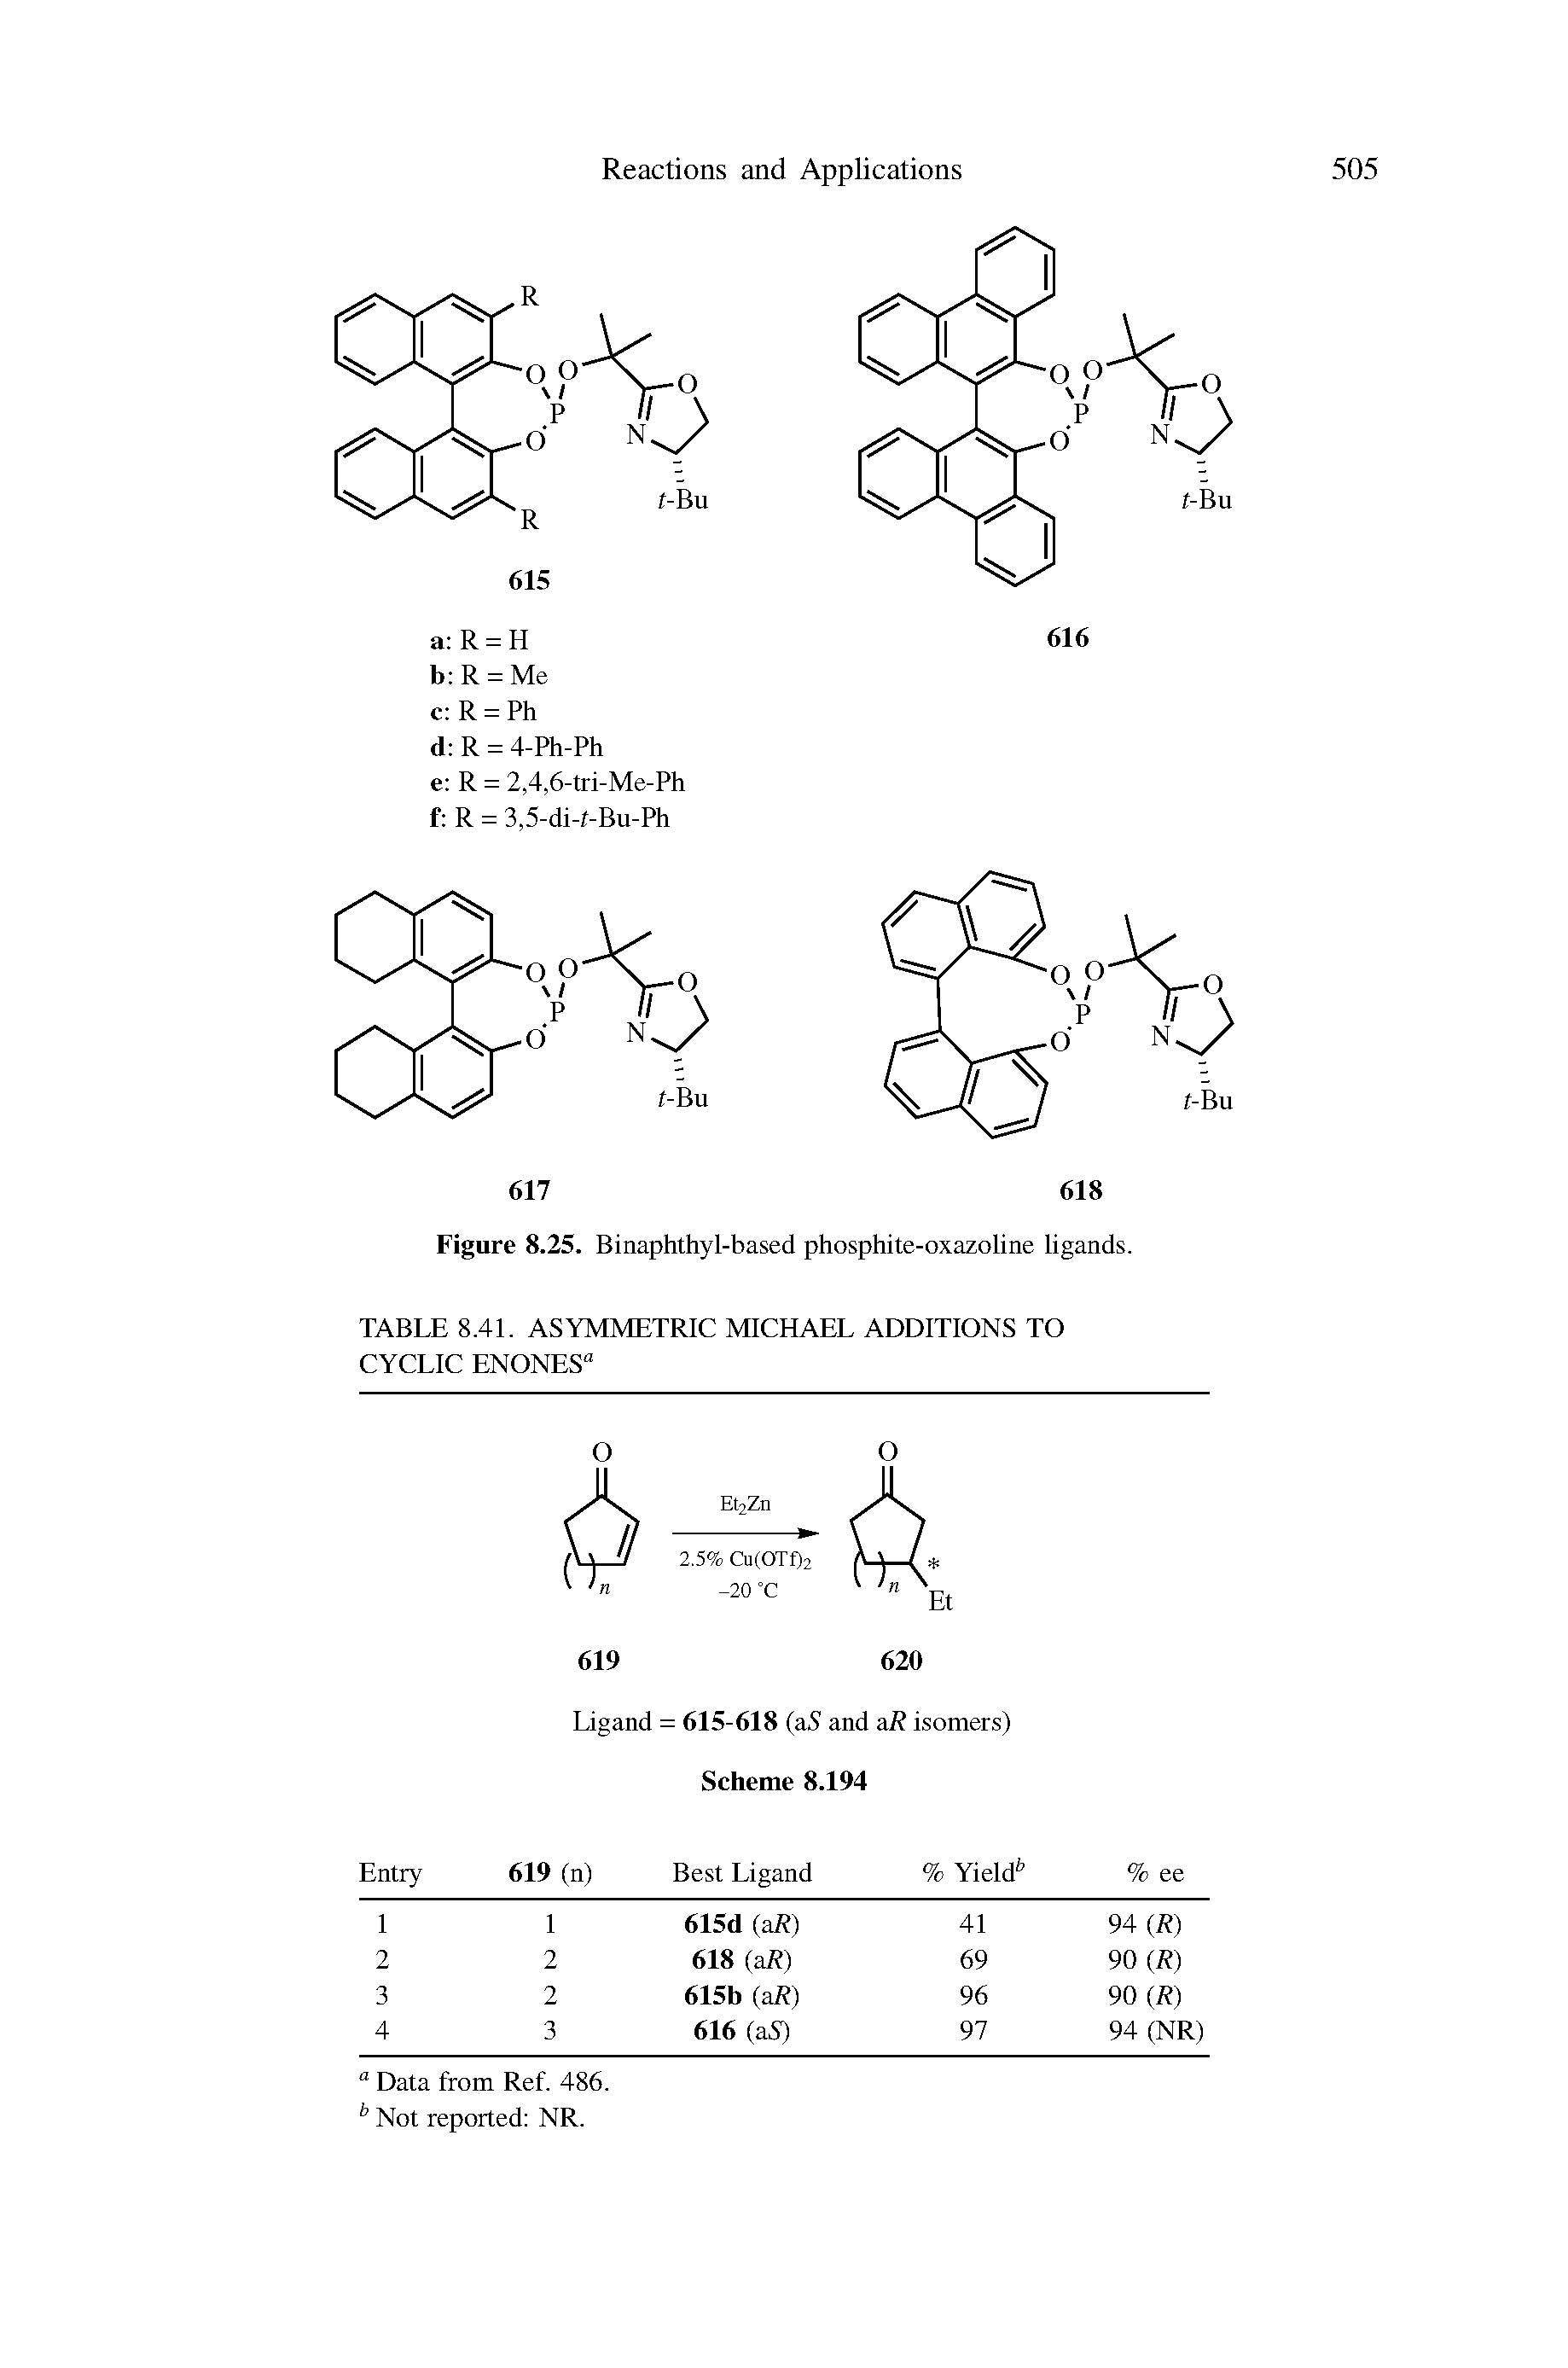 Figure 8.25. Binaphthyl-based phosphite-oxazoline ligands.